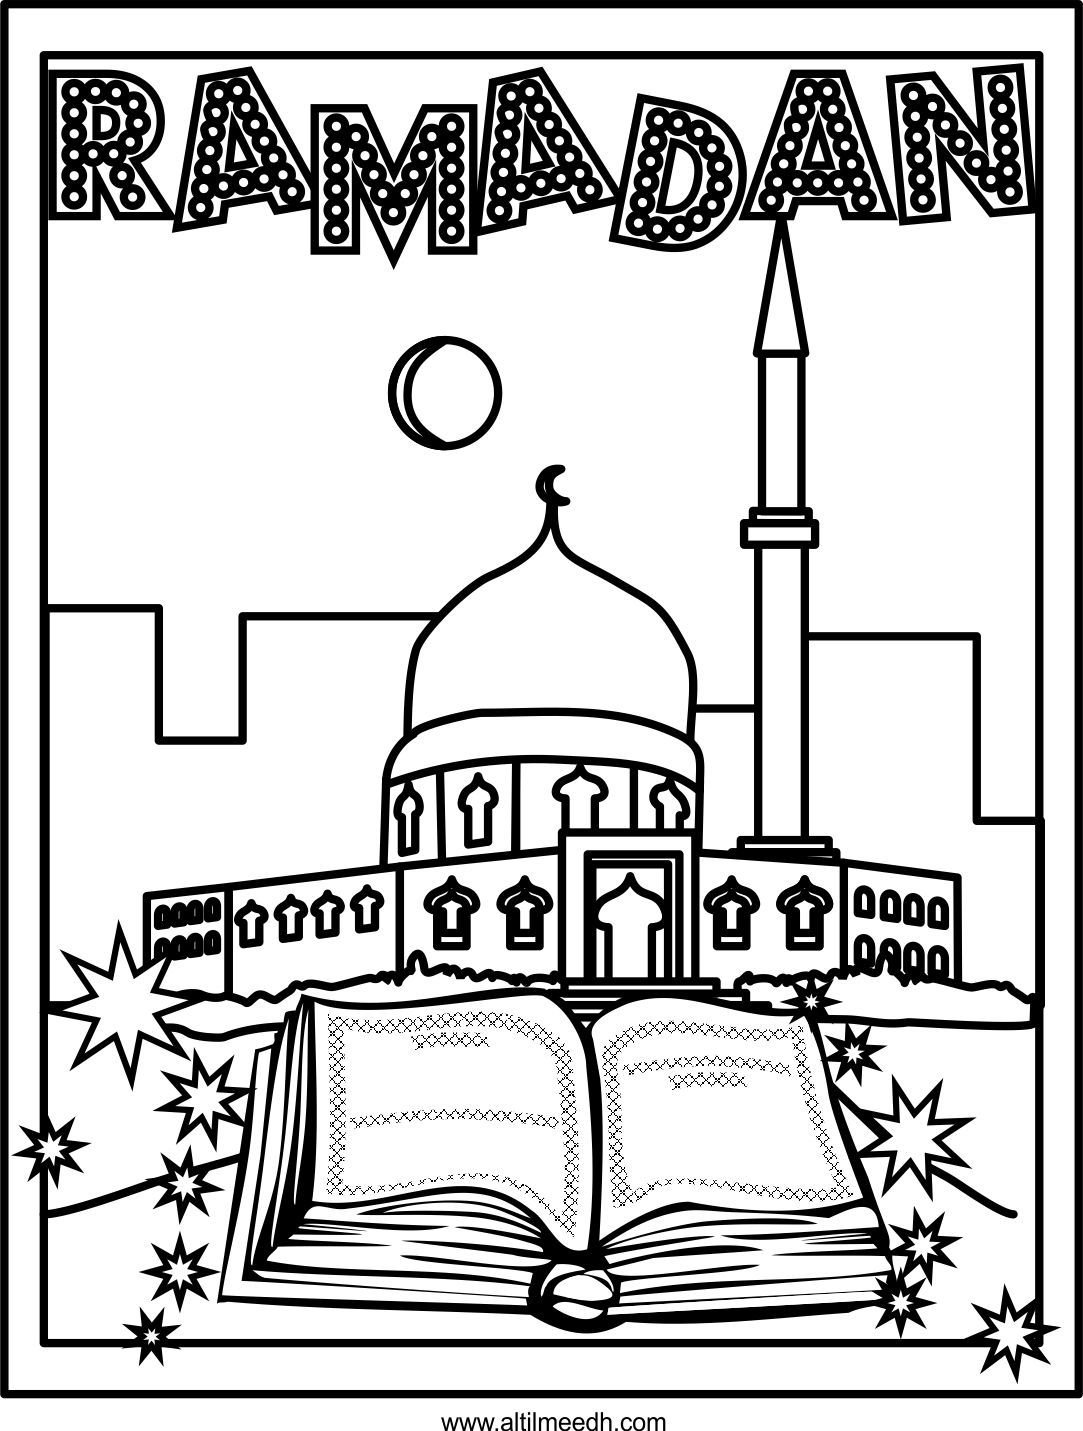 Раскраска Рамадан для детей